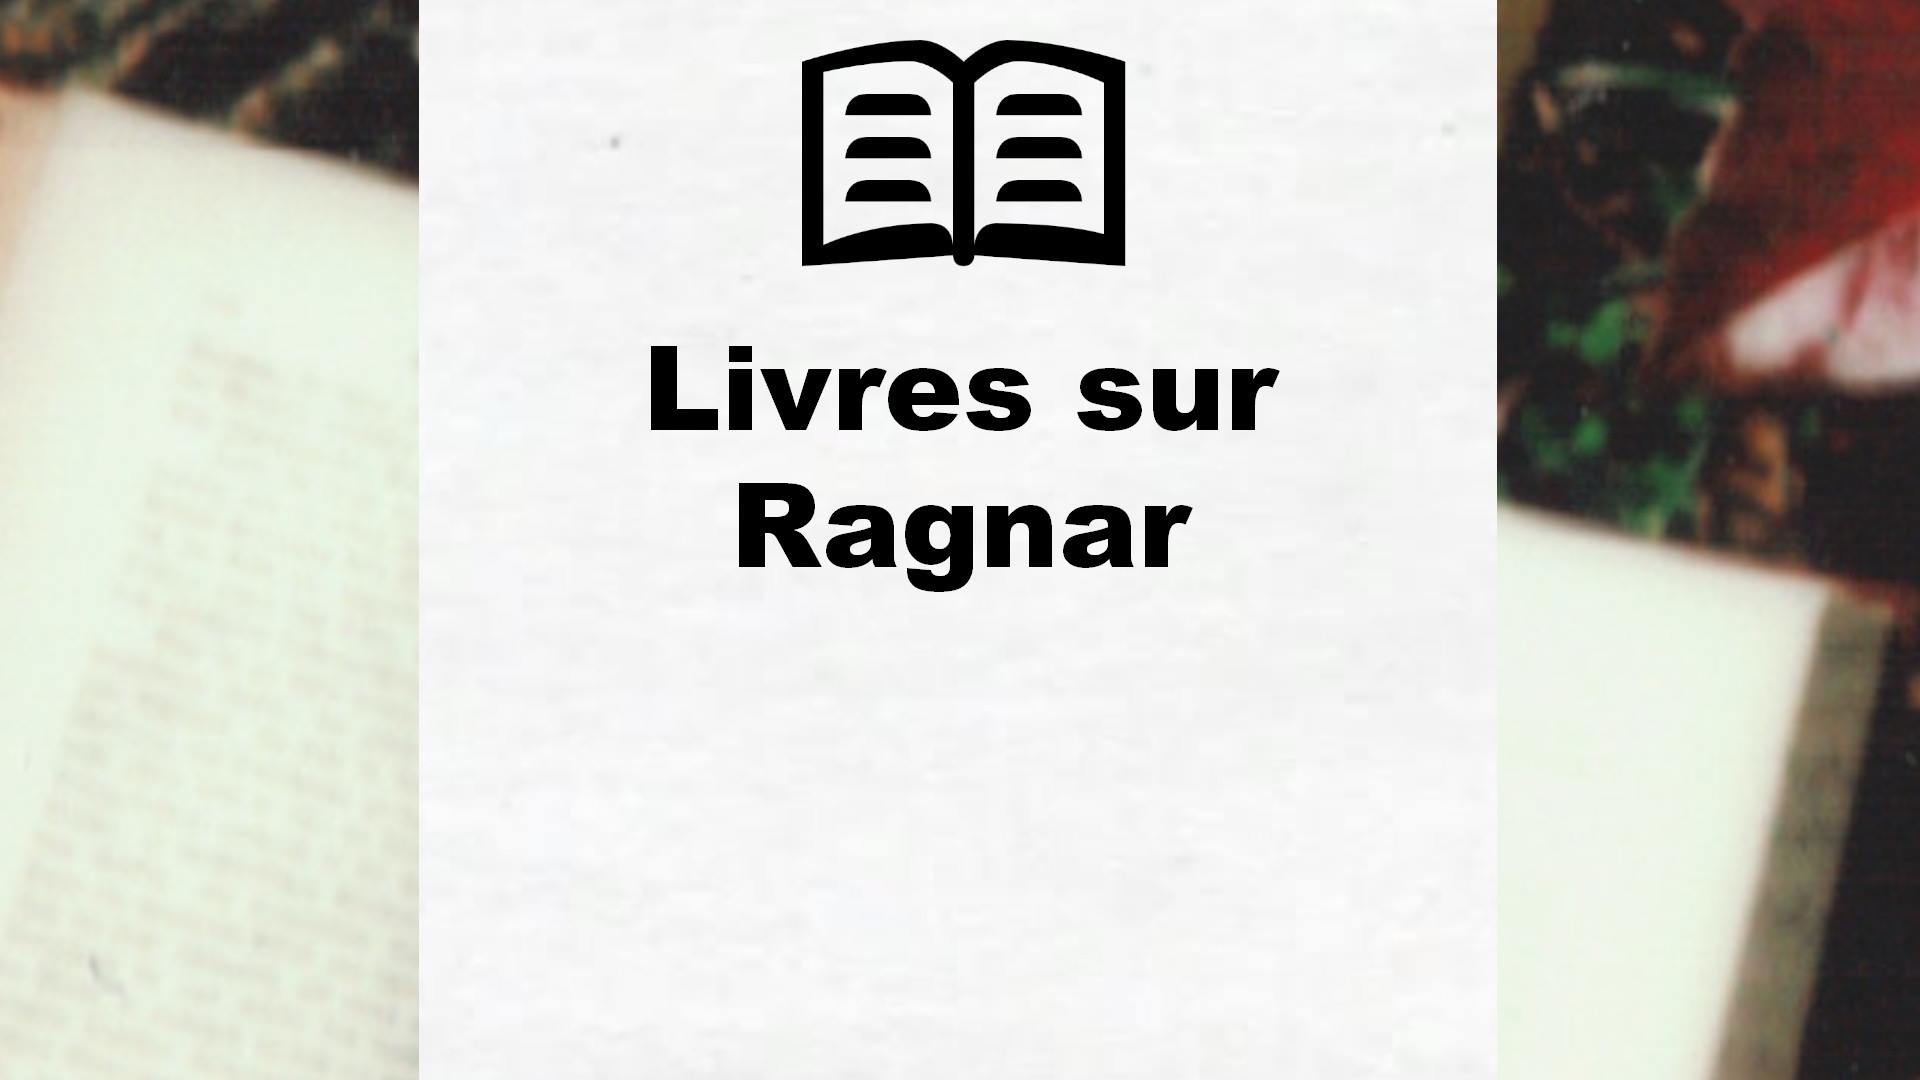 Livres sur Ragnar